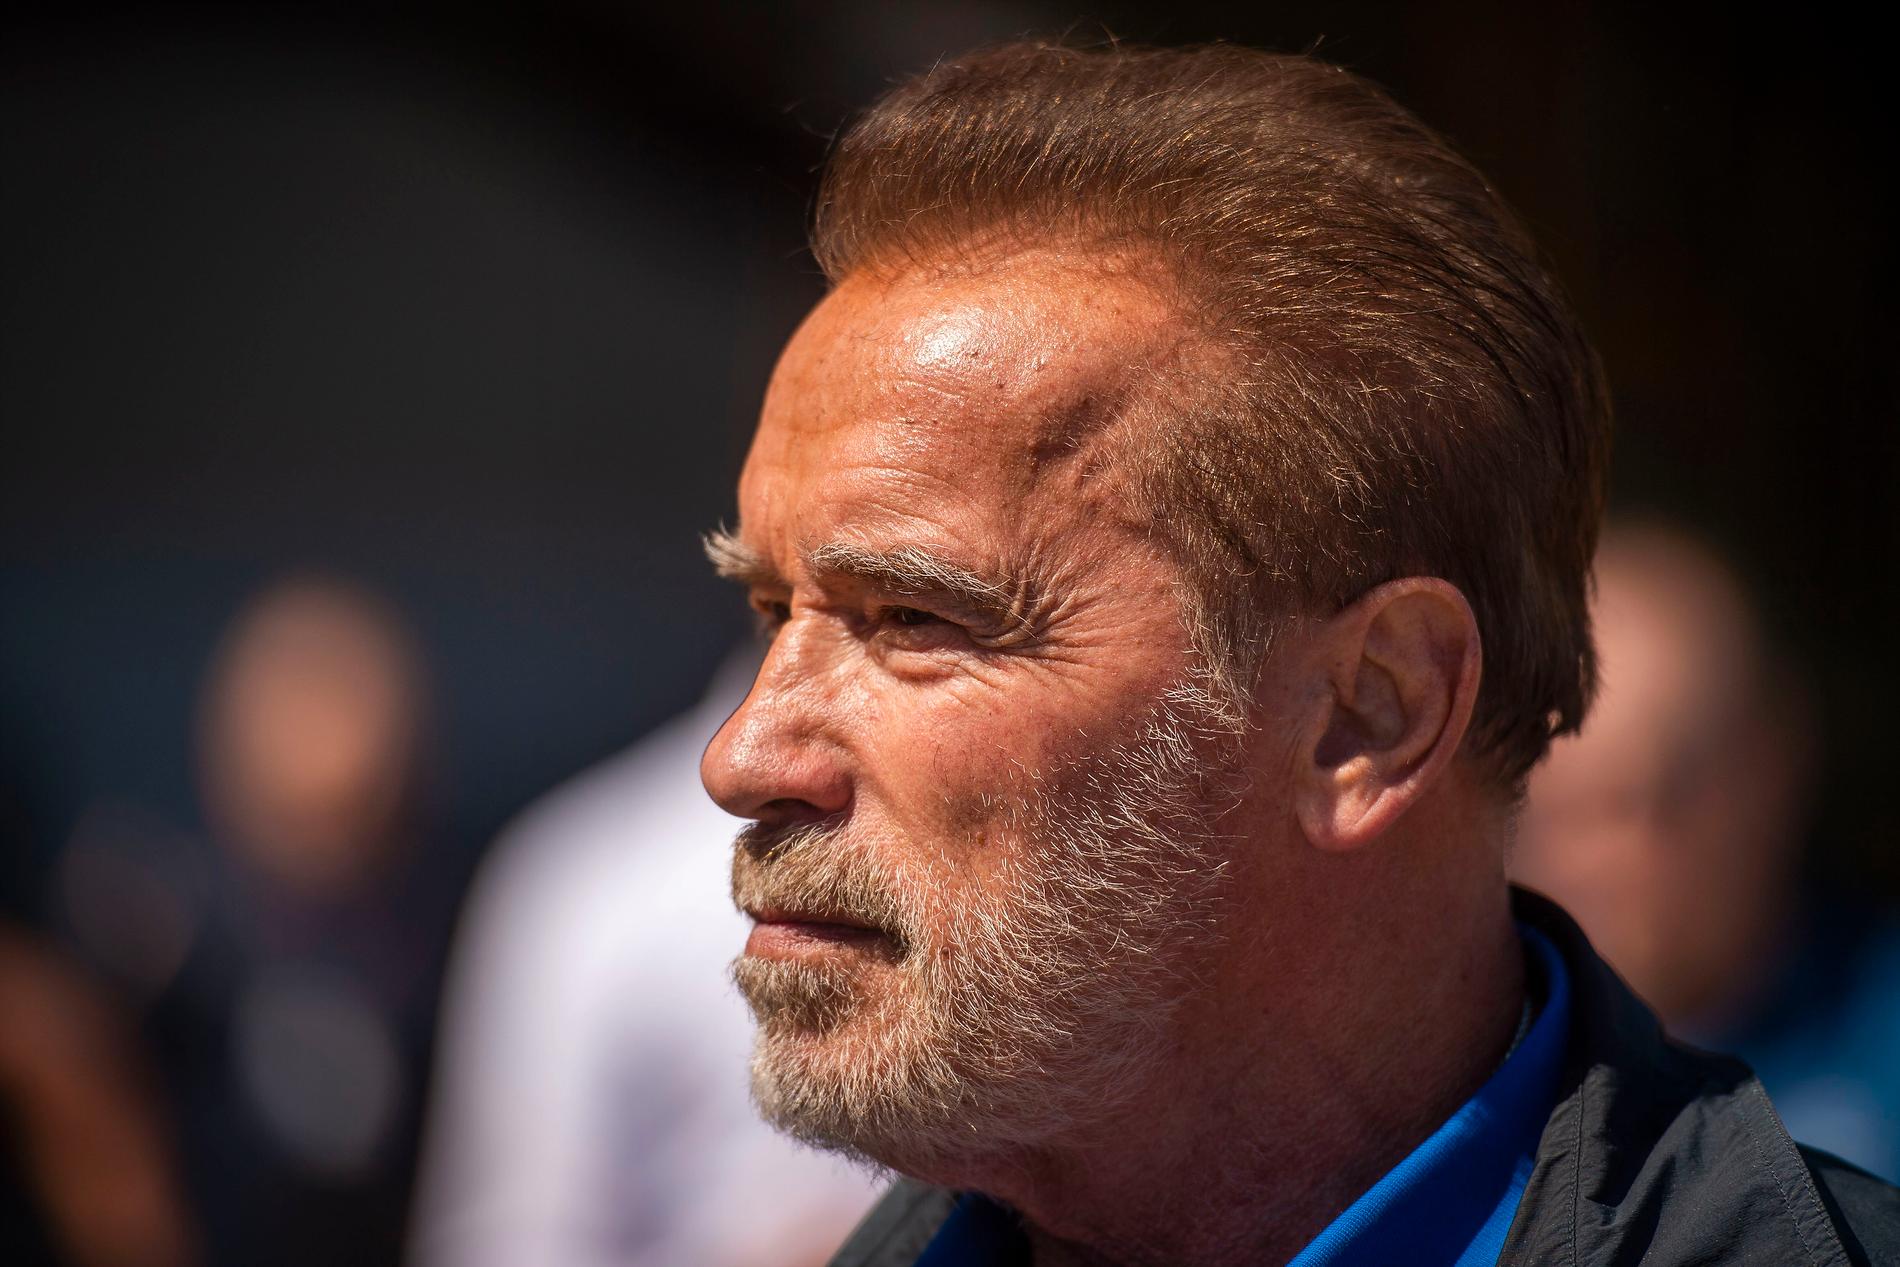 Enbart på Twitter har Schwarzeneggers video över 24 miljoner visningar och över 300 000 delningar. Arkivbild.